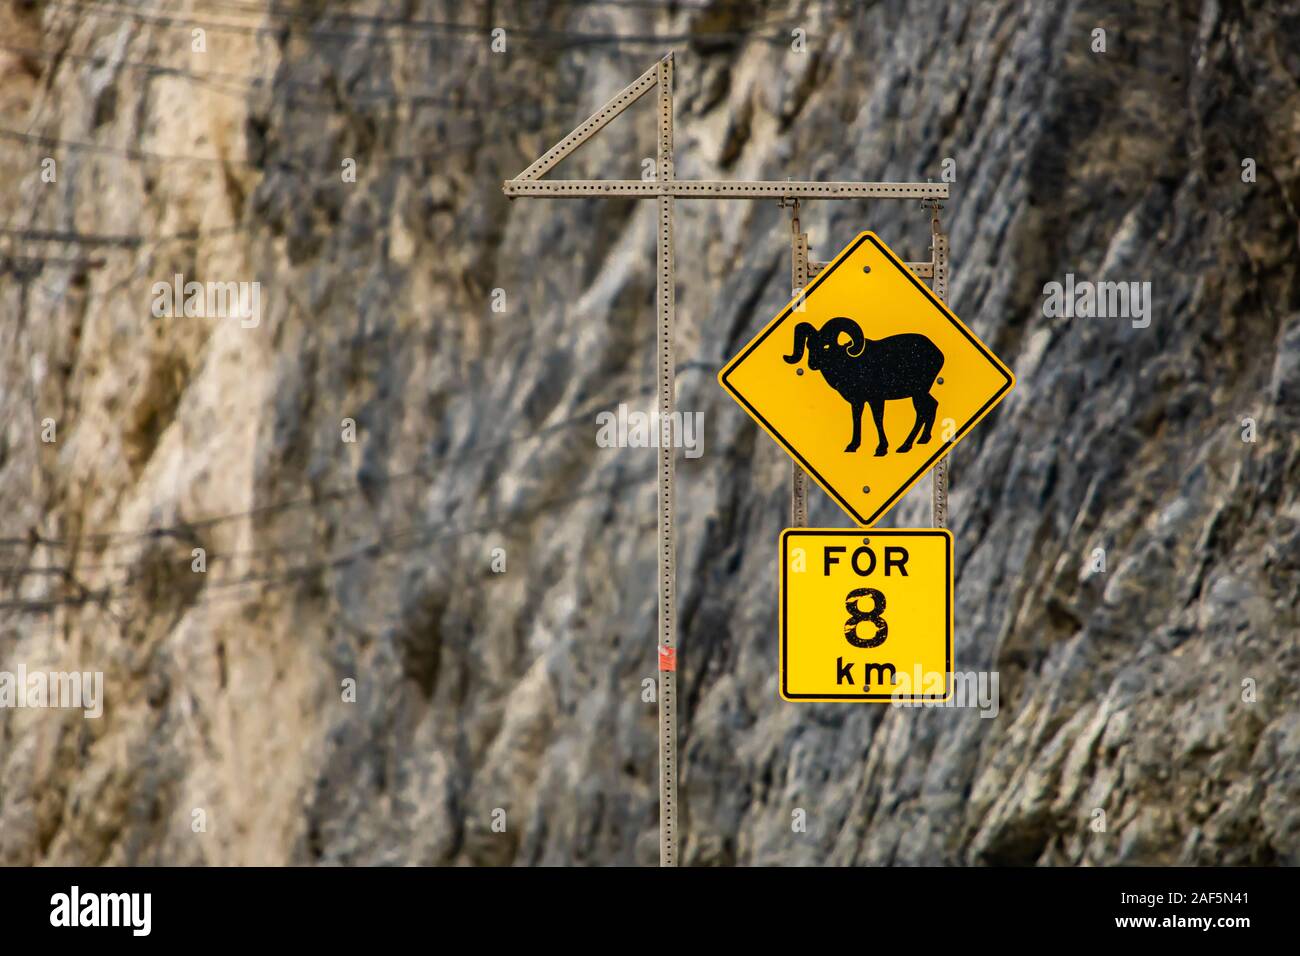 Mouflons Crossing road sign, pour 8 km de routes jaune d'avertissement d'une signalisation selective focus view avec pente rocheuse background Banque D'Images